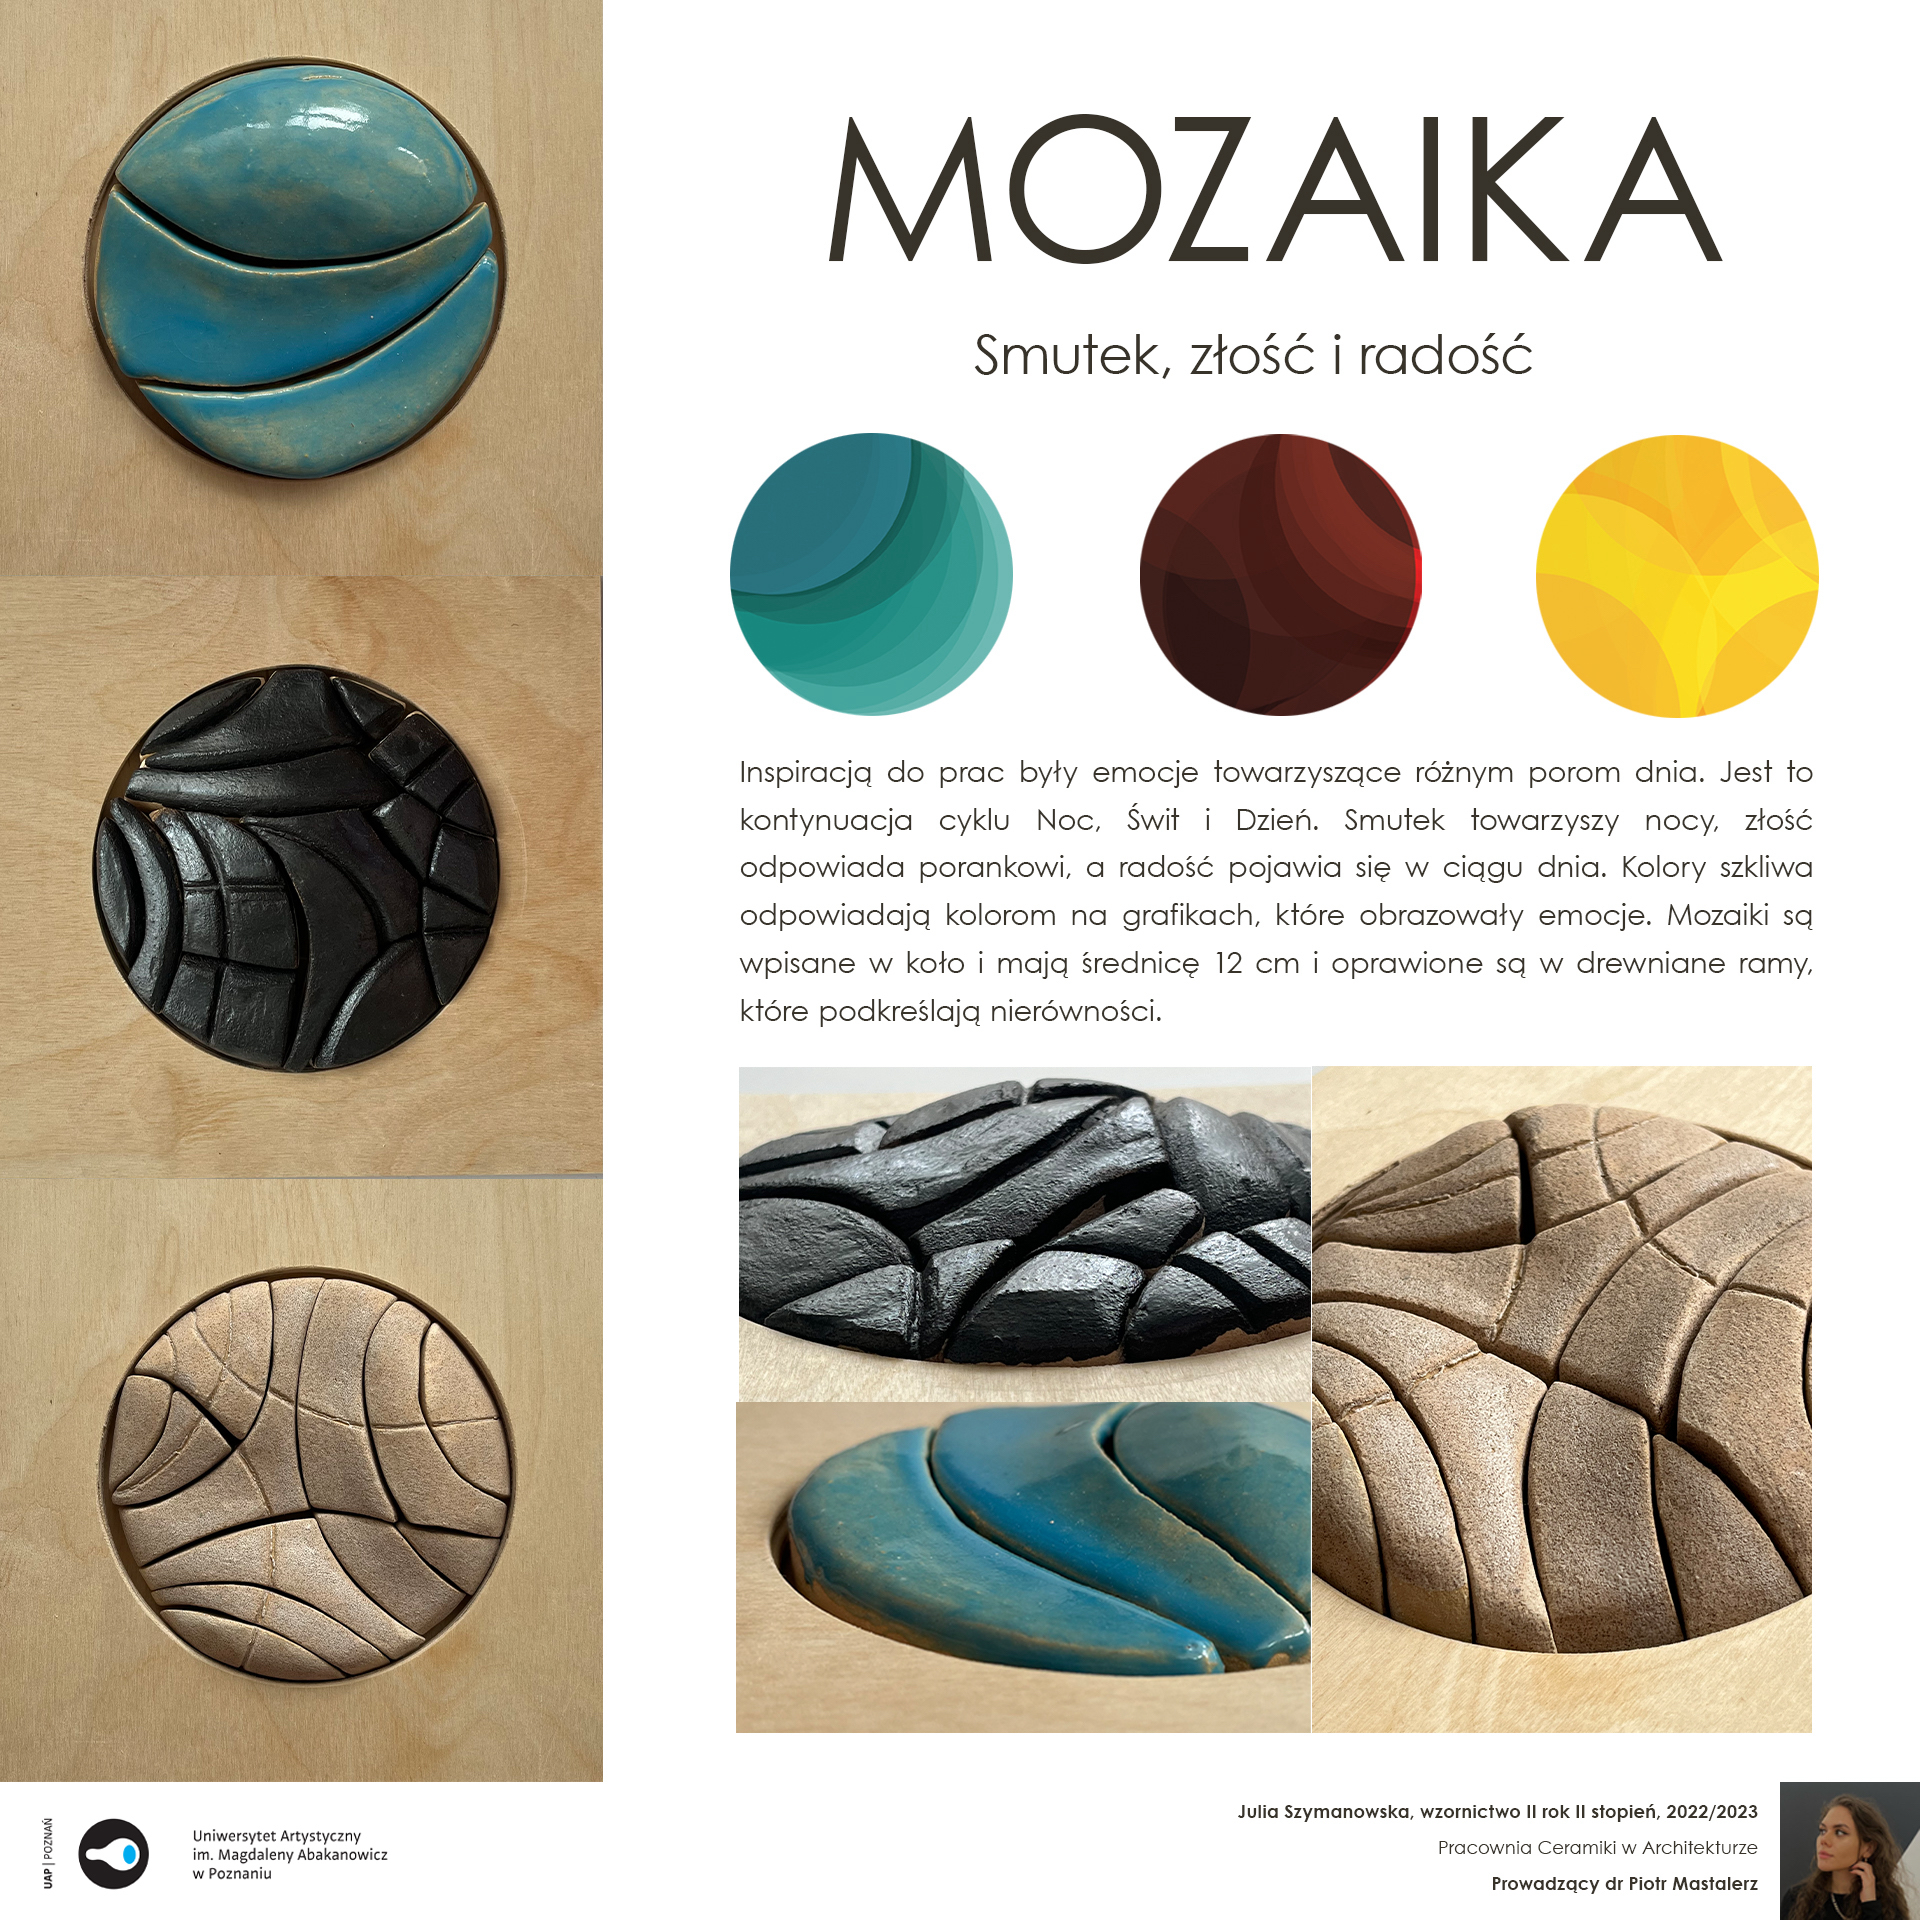 Opis alternatywny: Ceramiczne kompozycje w formie kolorowych kół.